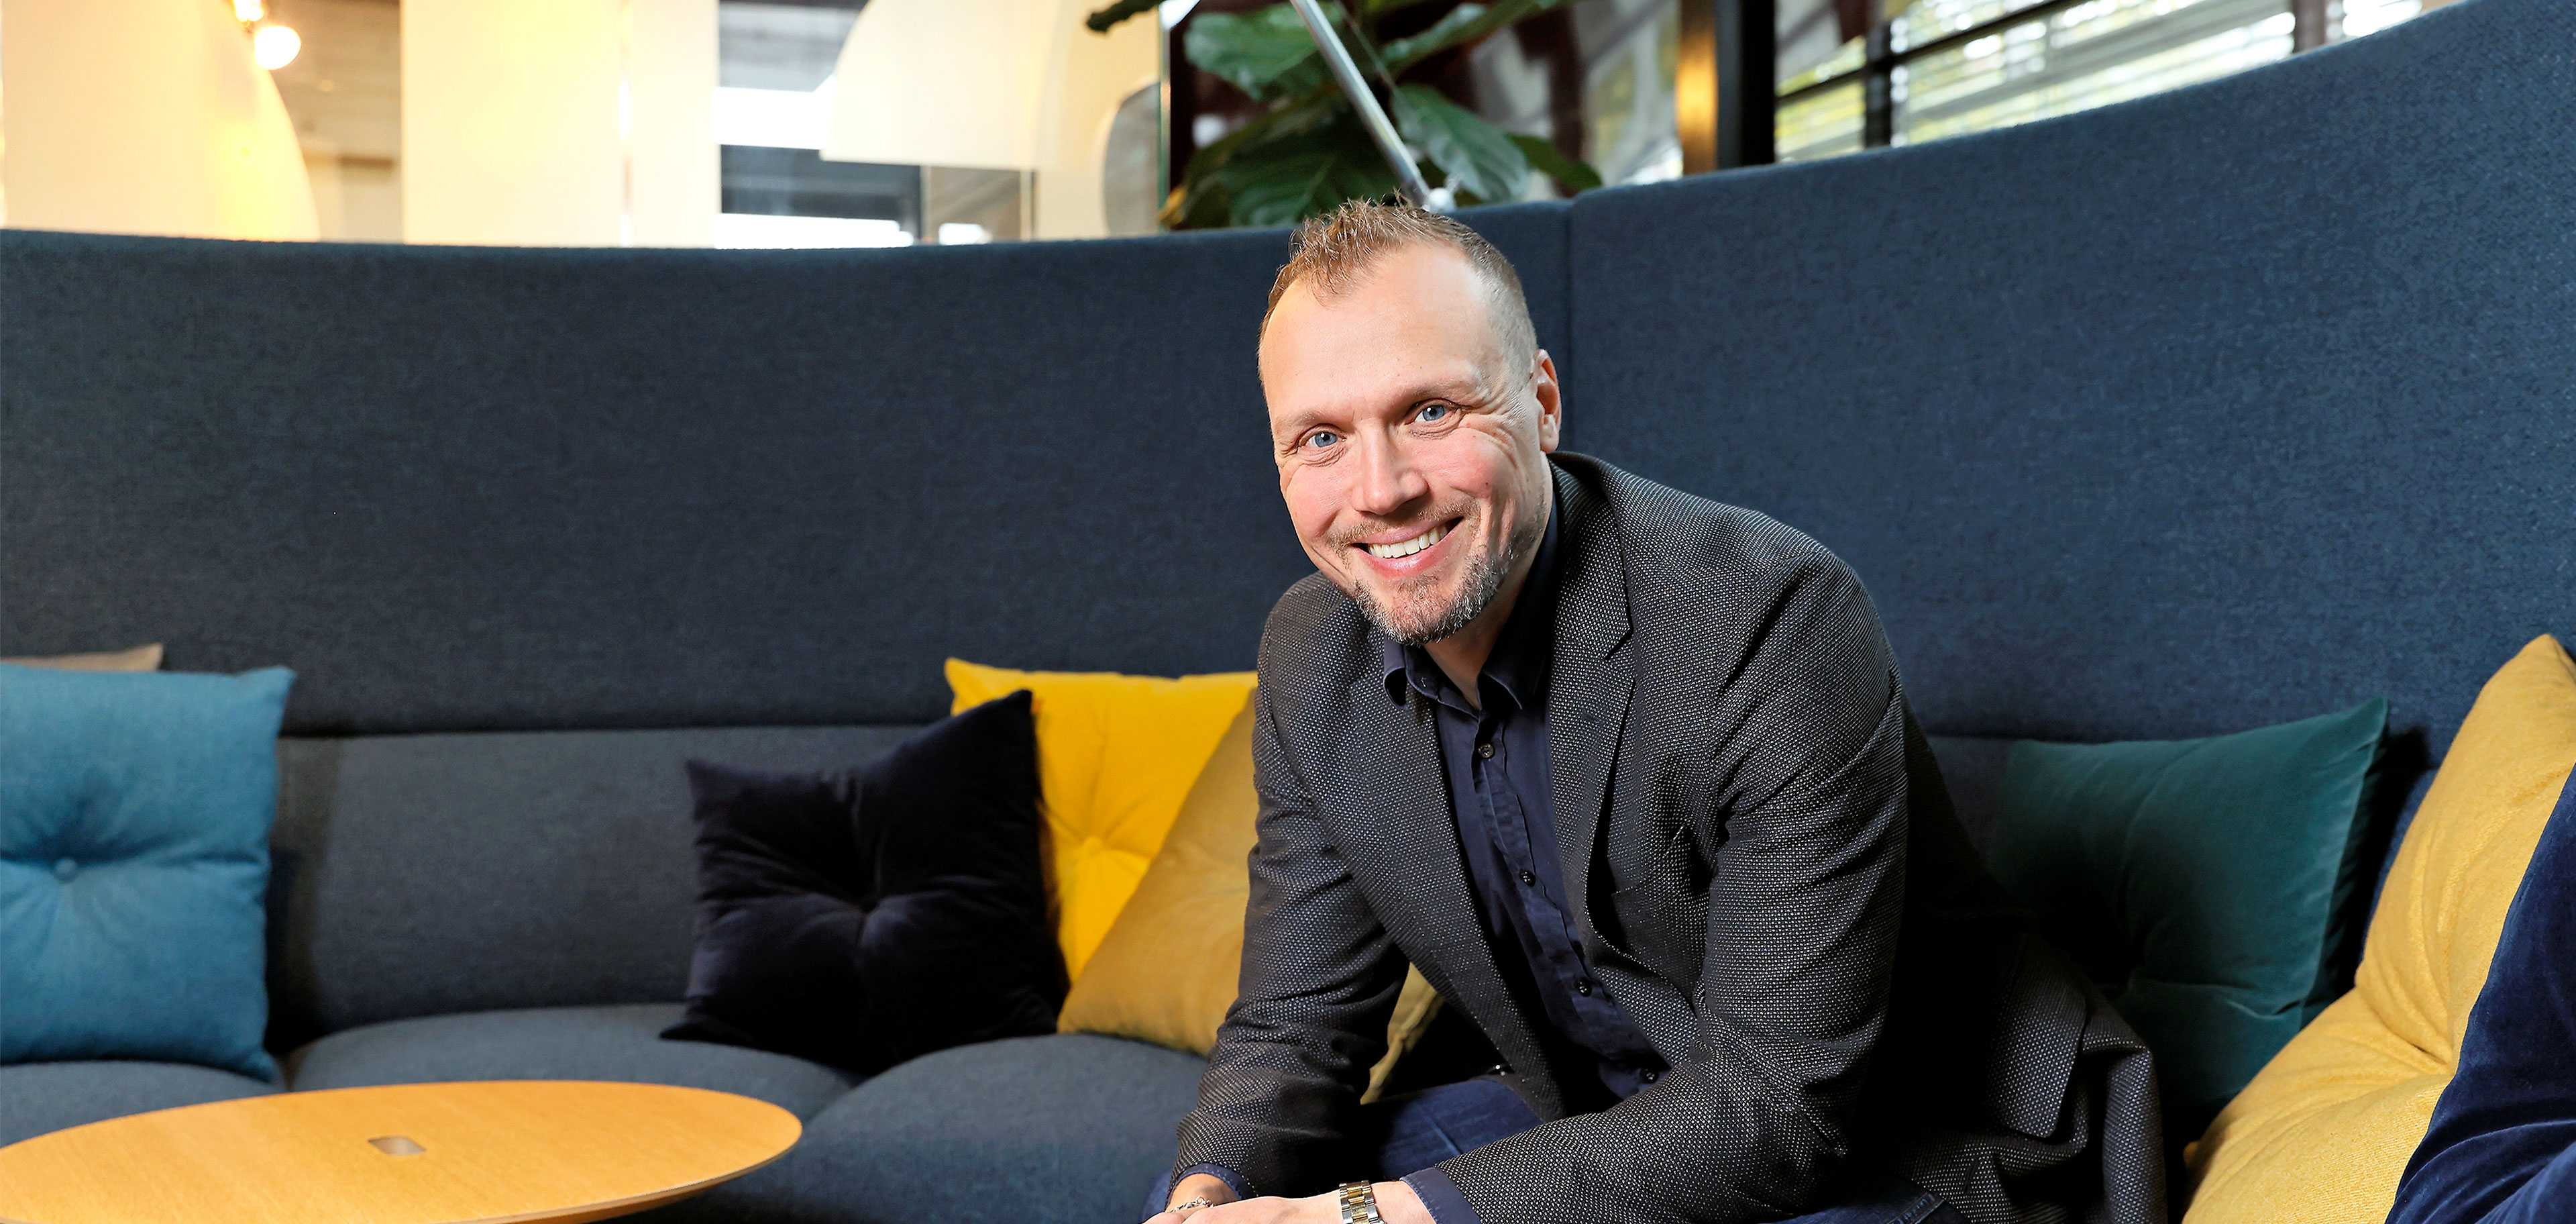 Martela's CEO Artti Aurasmaa sitting on a sofa